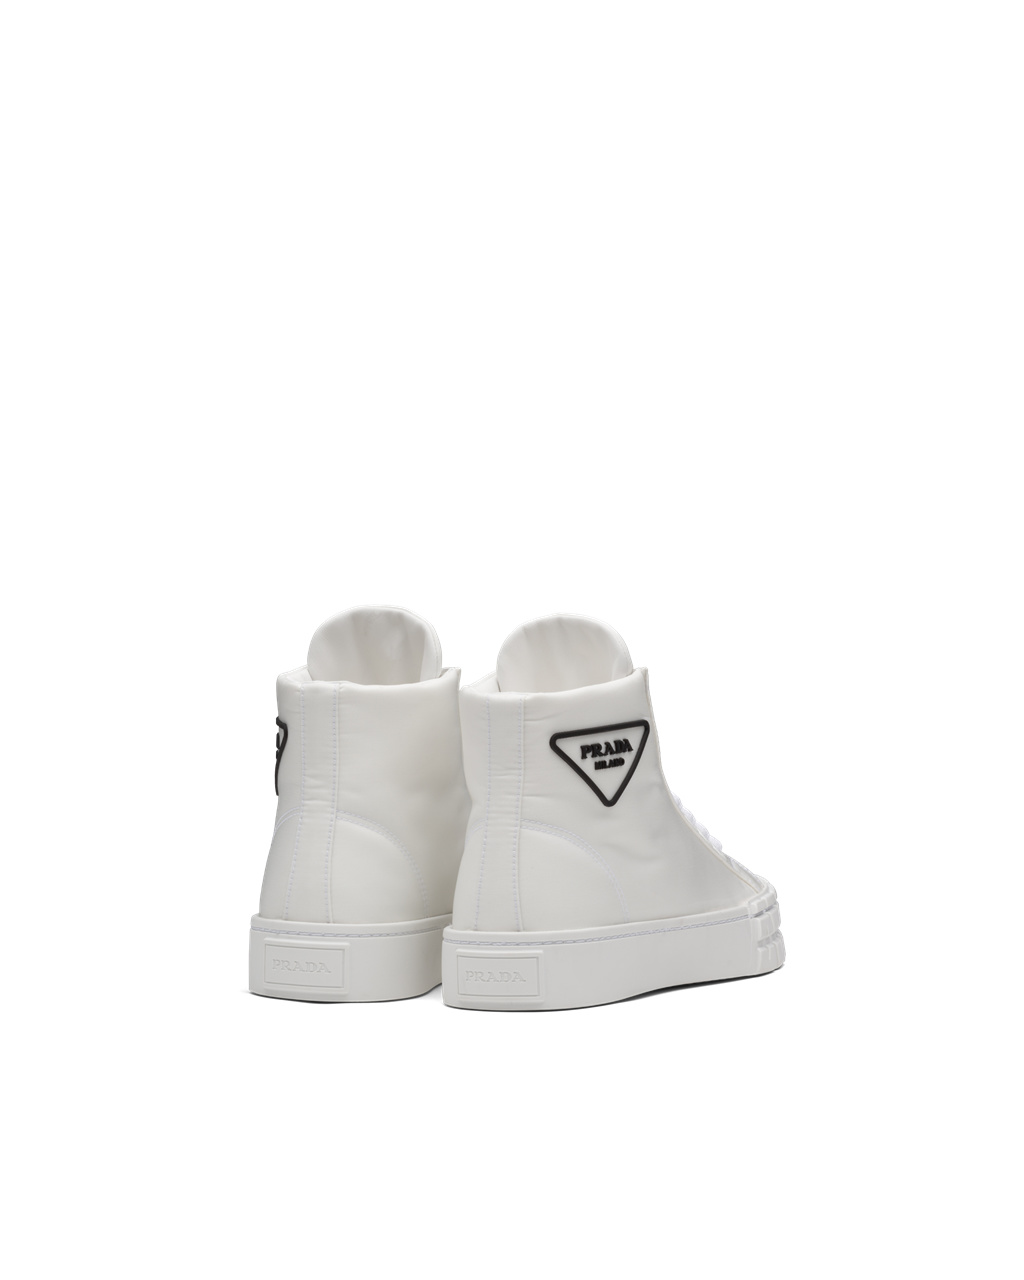 Prada Wheel Re-nylon Gabardine Sneakers White | 17FKHYNIV